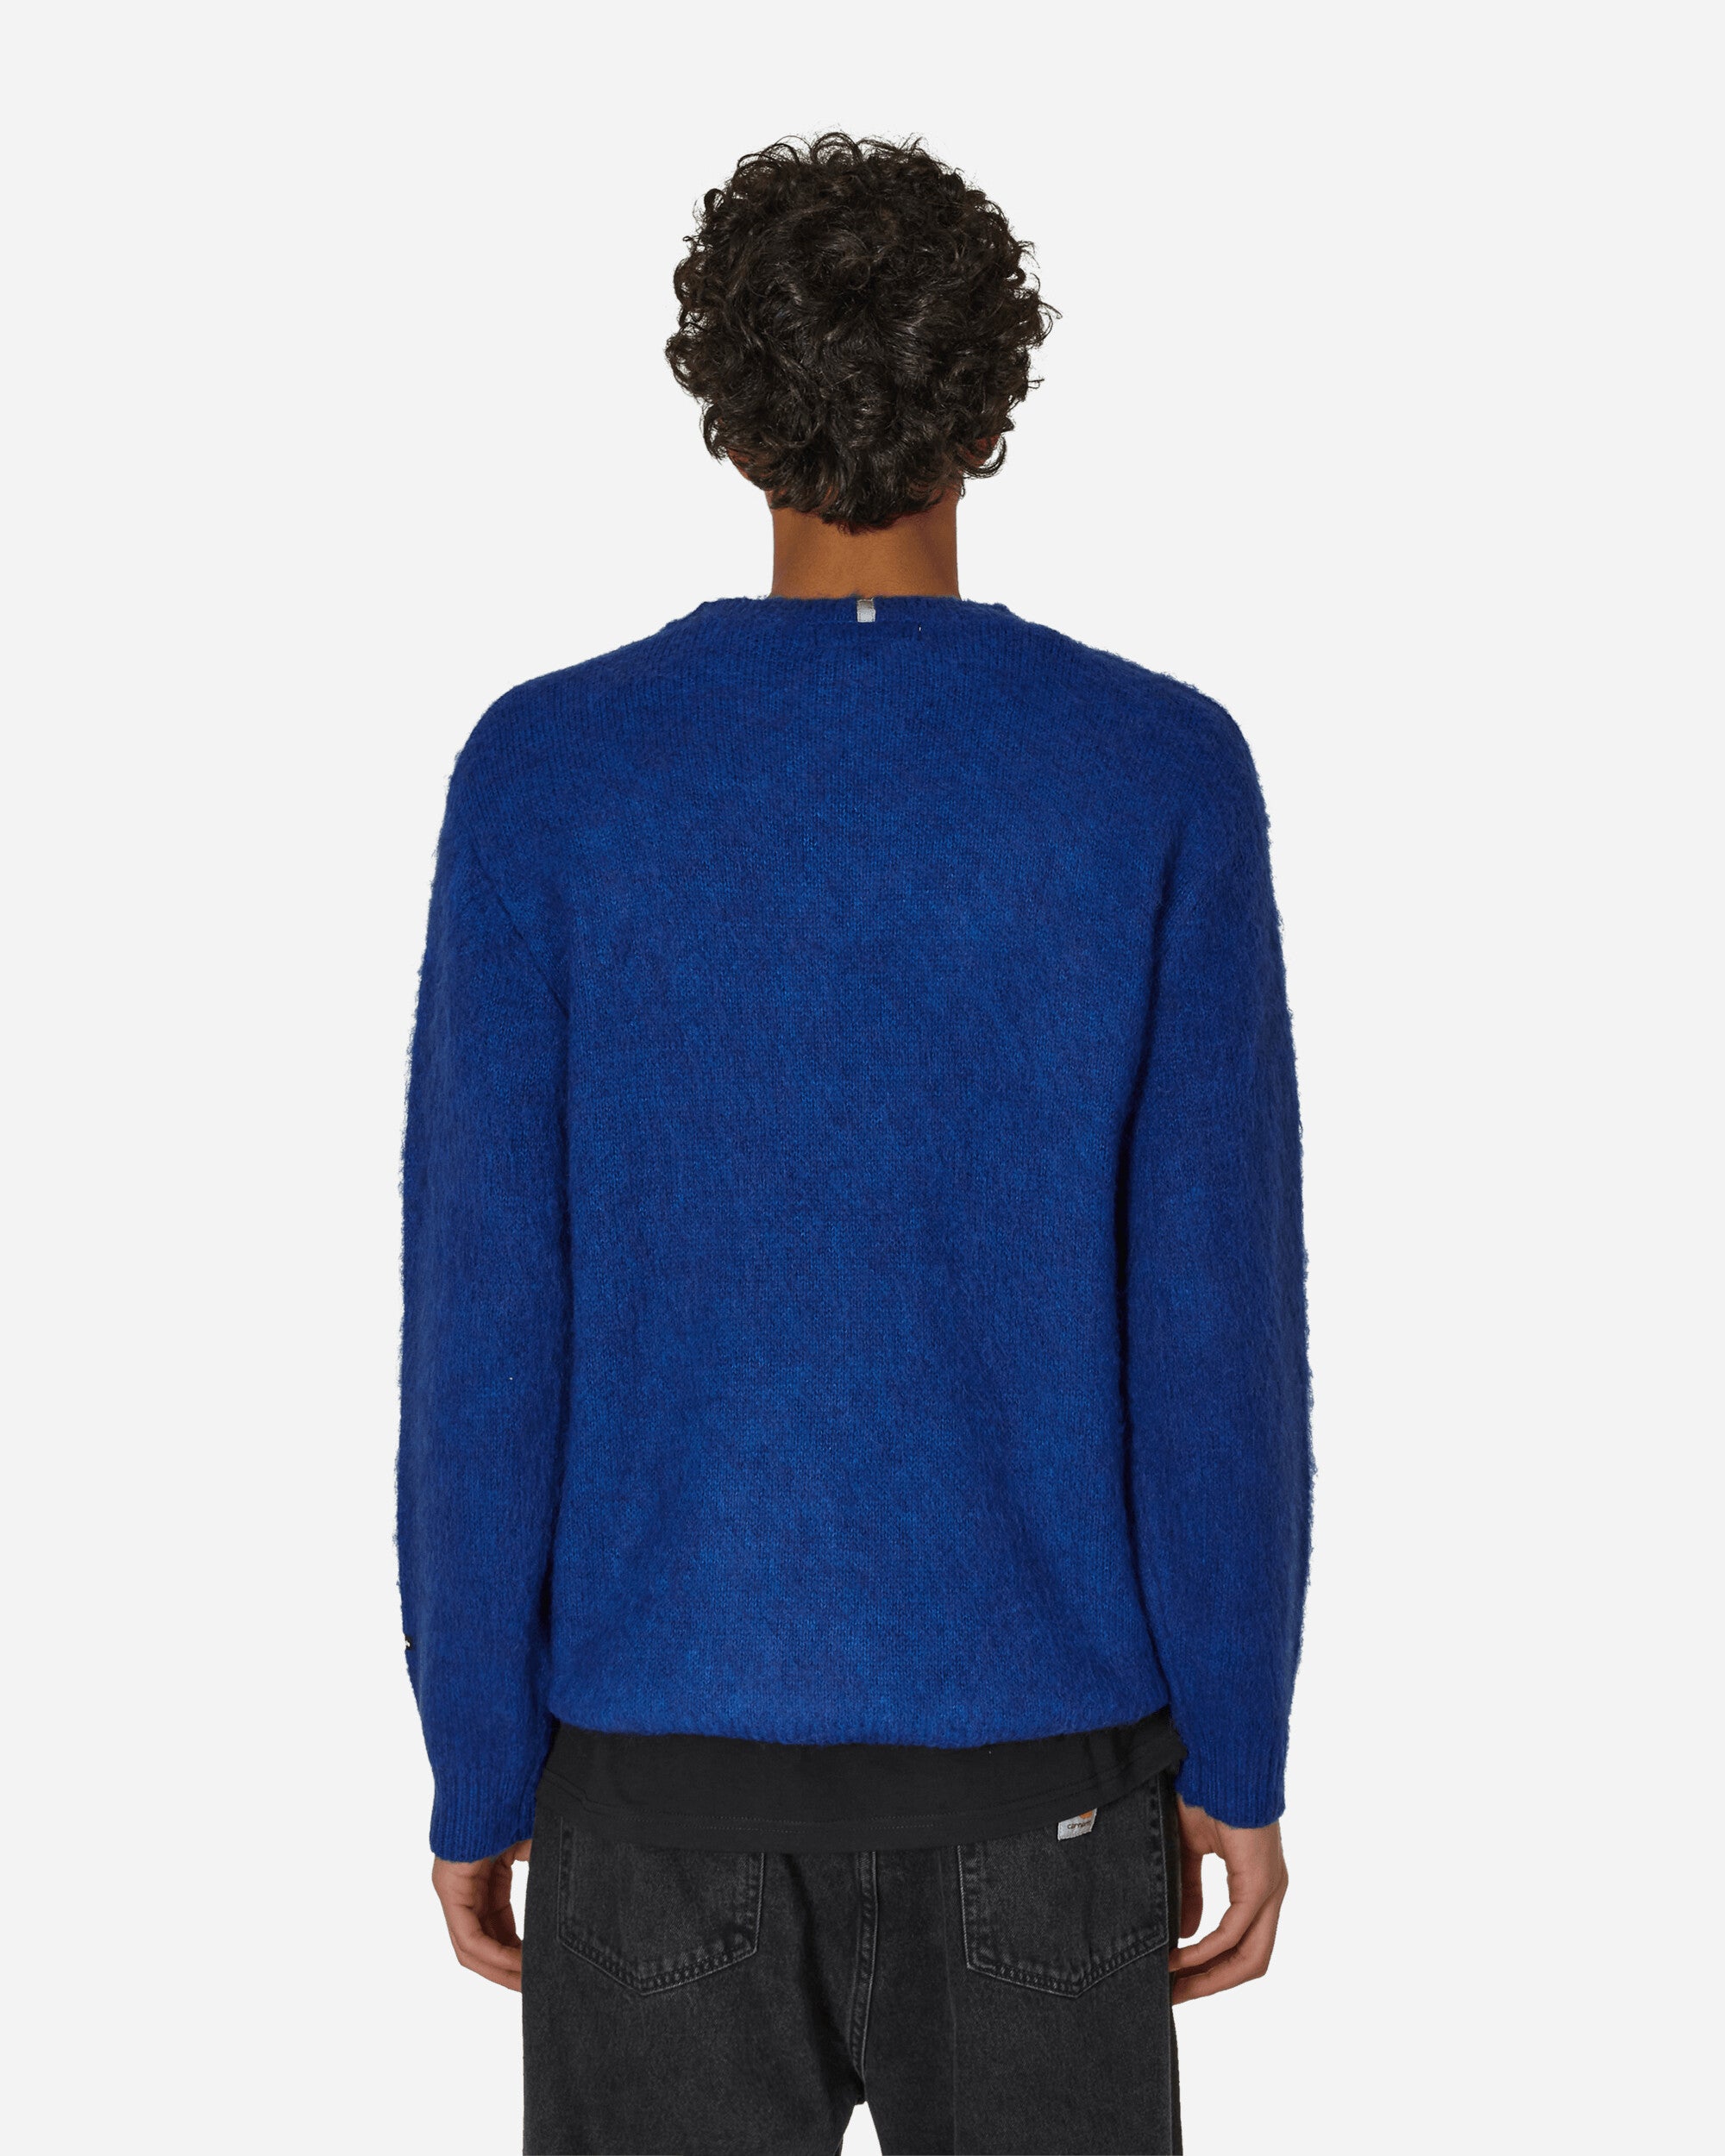 Manastash Aberdeen Sweater Blue Knitwears Sweaters 7923240001 84